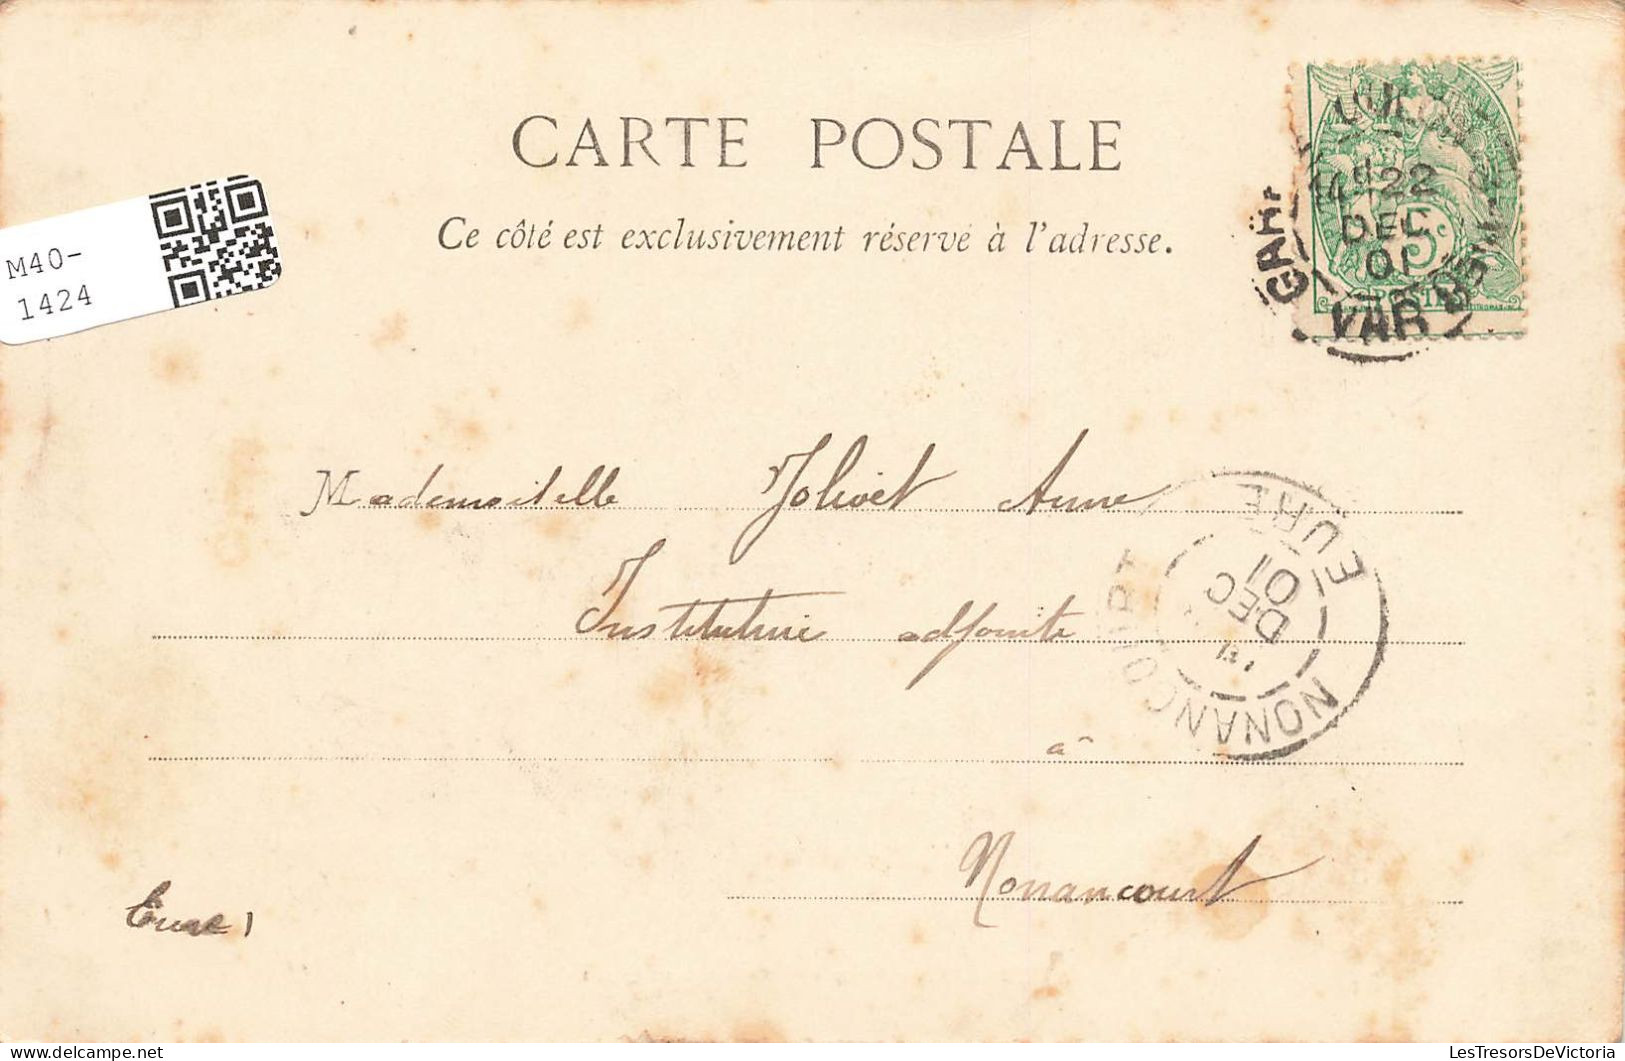 FRANCE - Toulon - Vue Générale Du Quai - Carte Postale Ancienne - Toulon